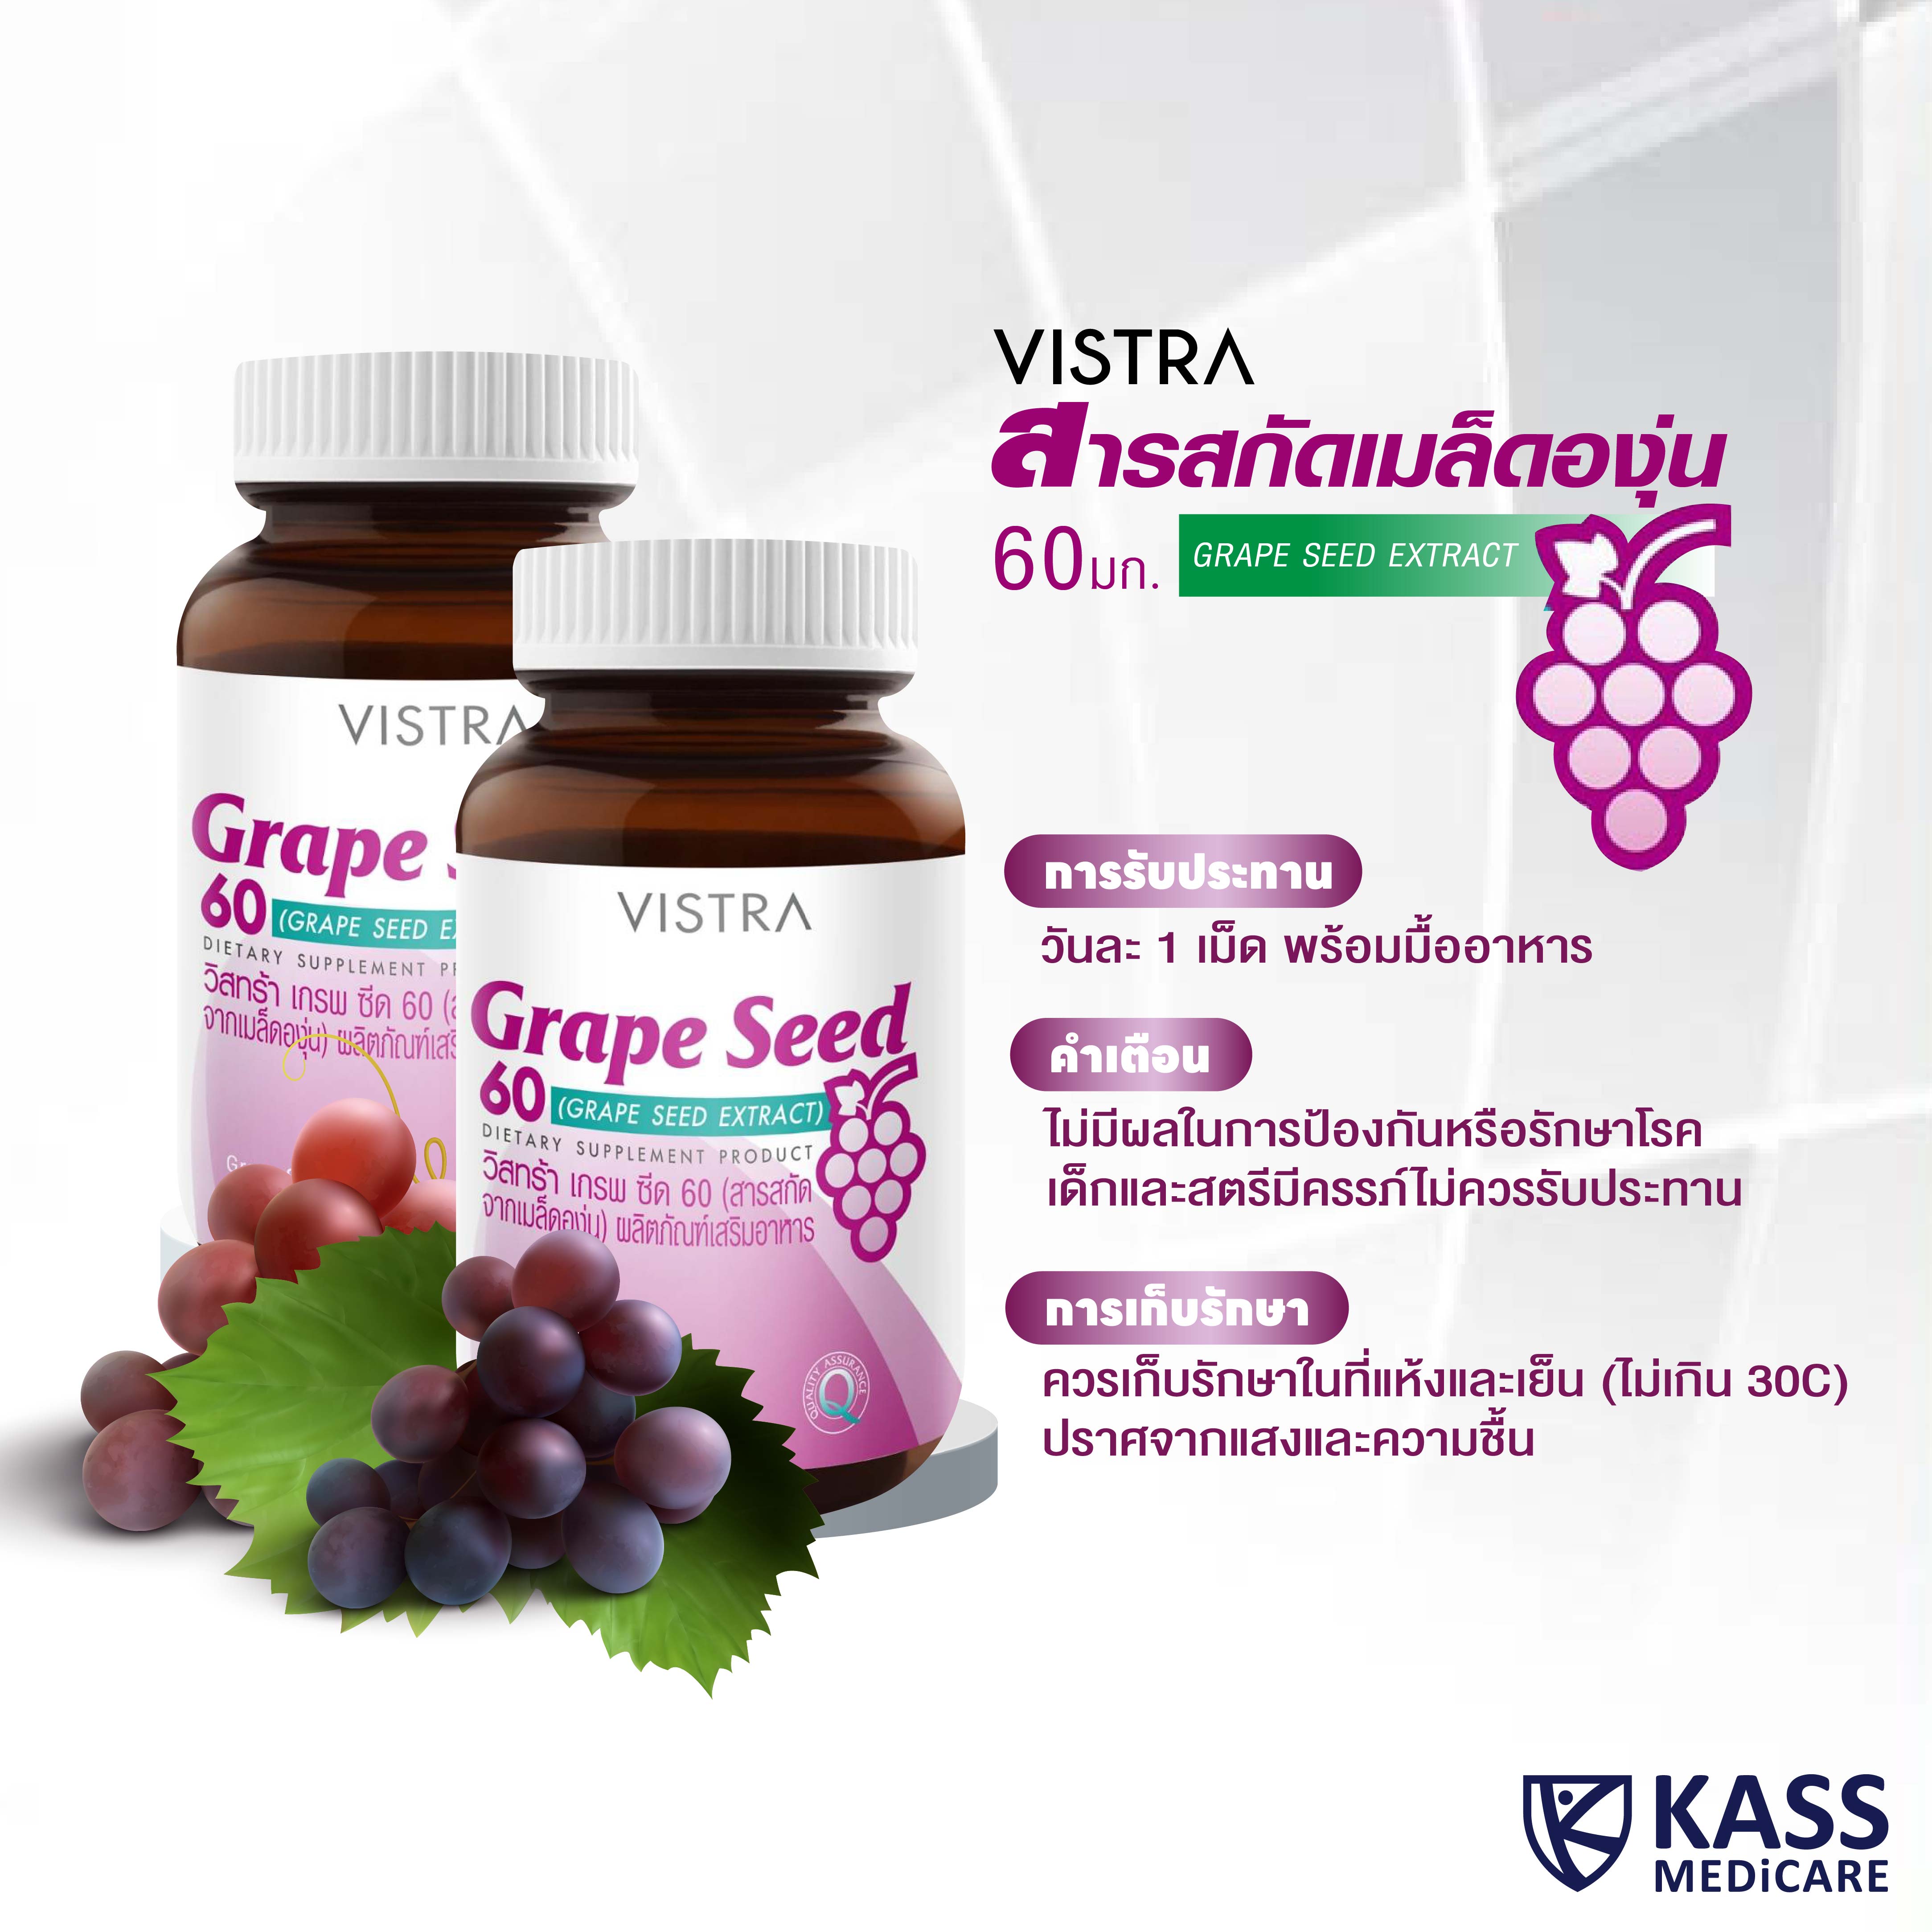 VISTRA Grape Seed 60mg 30 CAPSULES / วิสทร้า เกรพ ซีด 60 (สารสกัดจาก ...